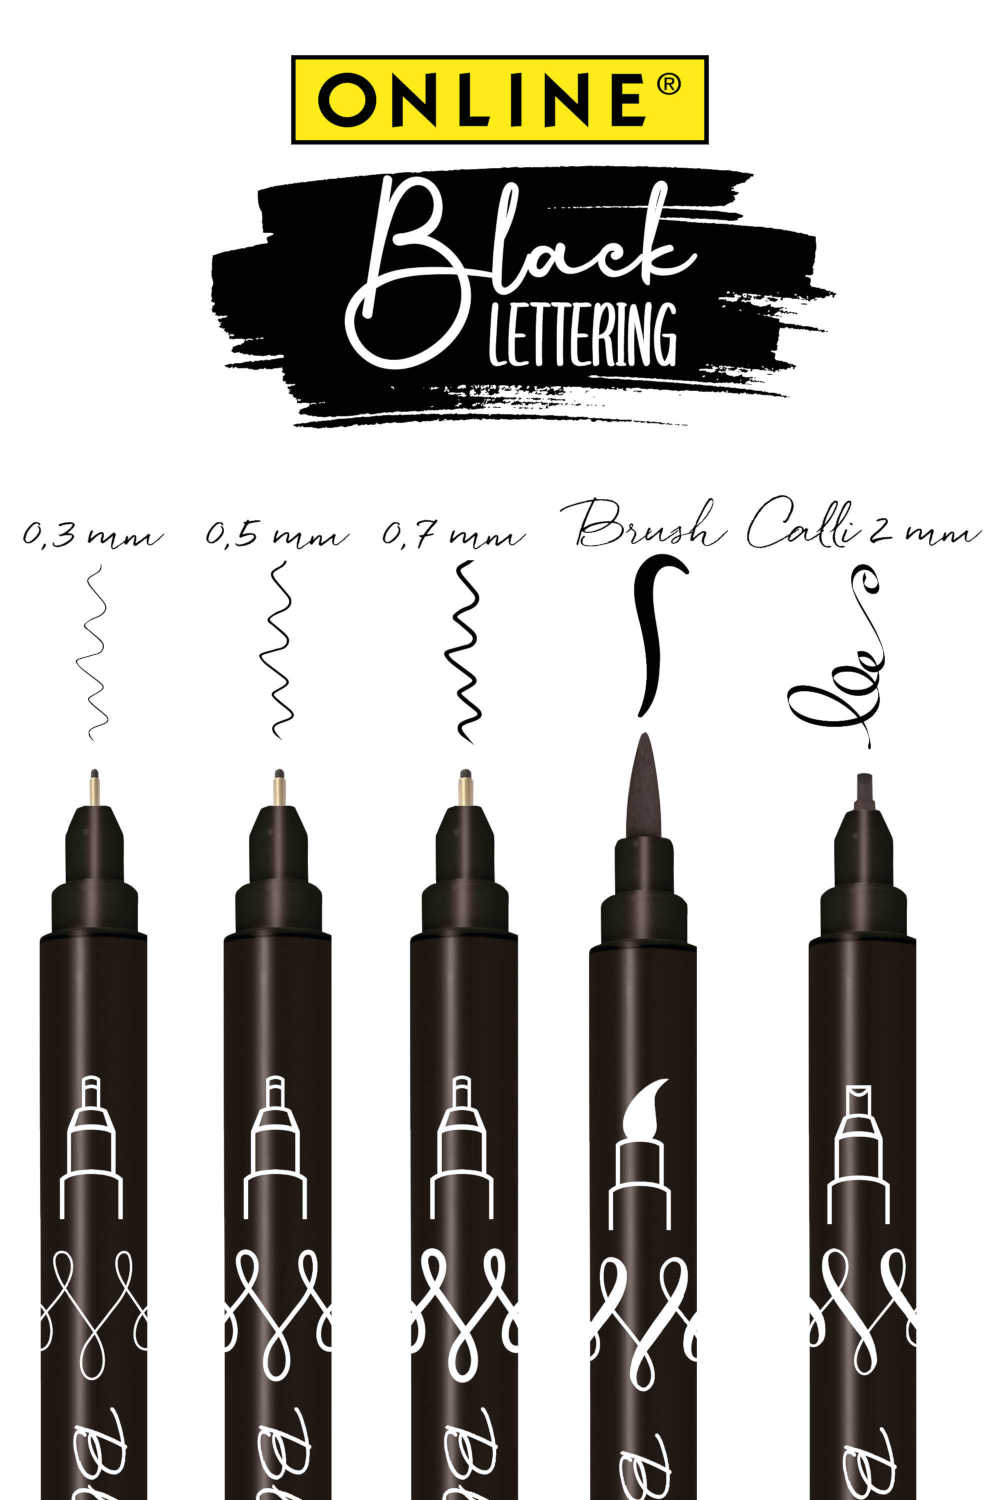 Online Black Lettering 5-er Set